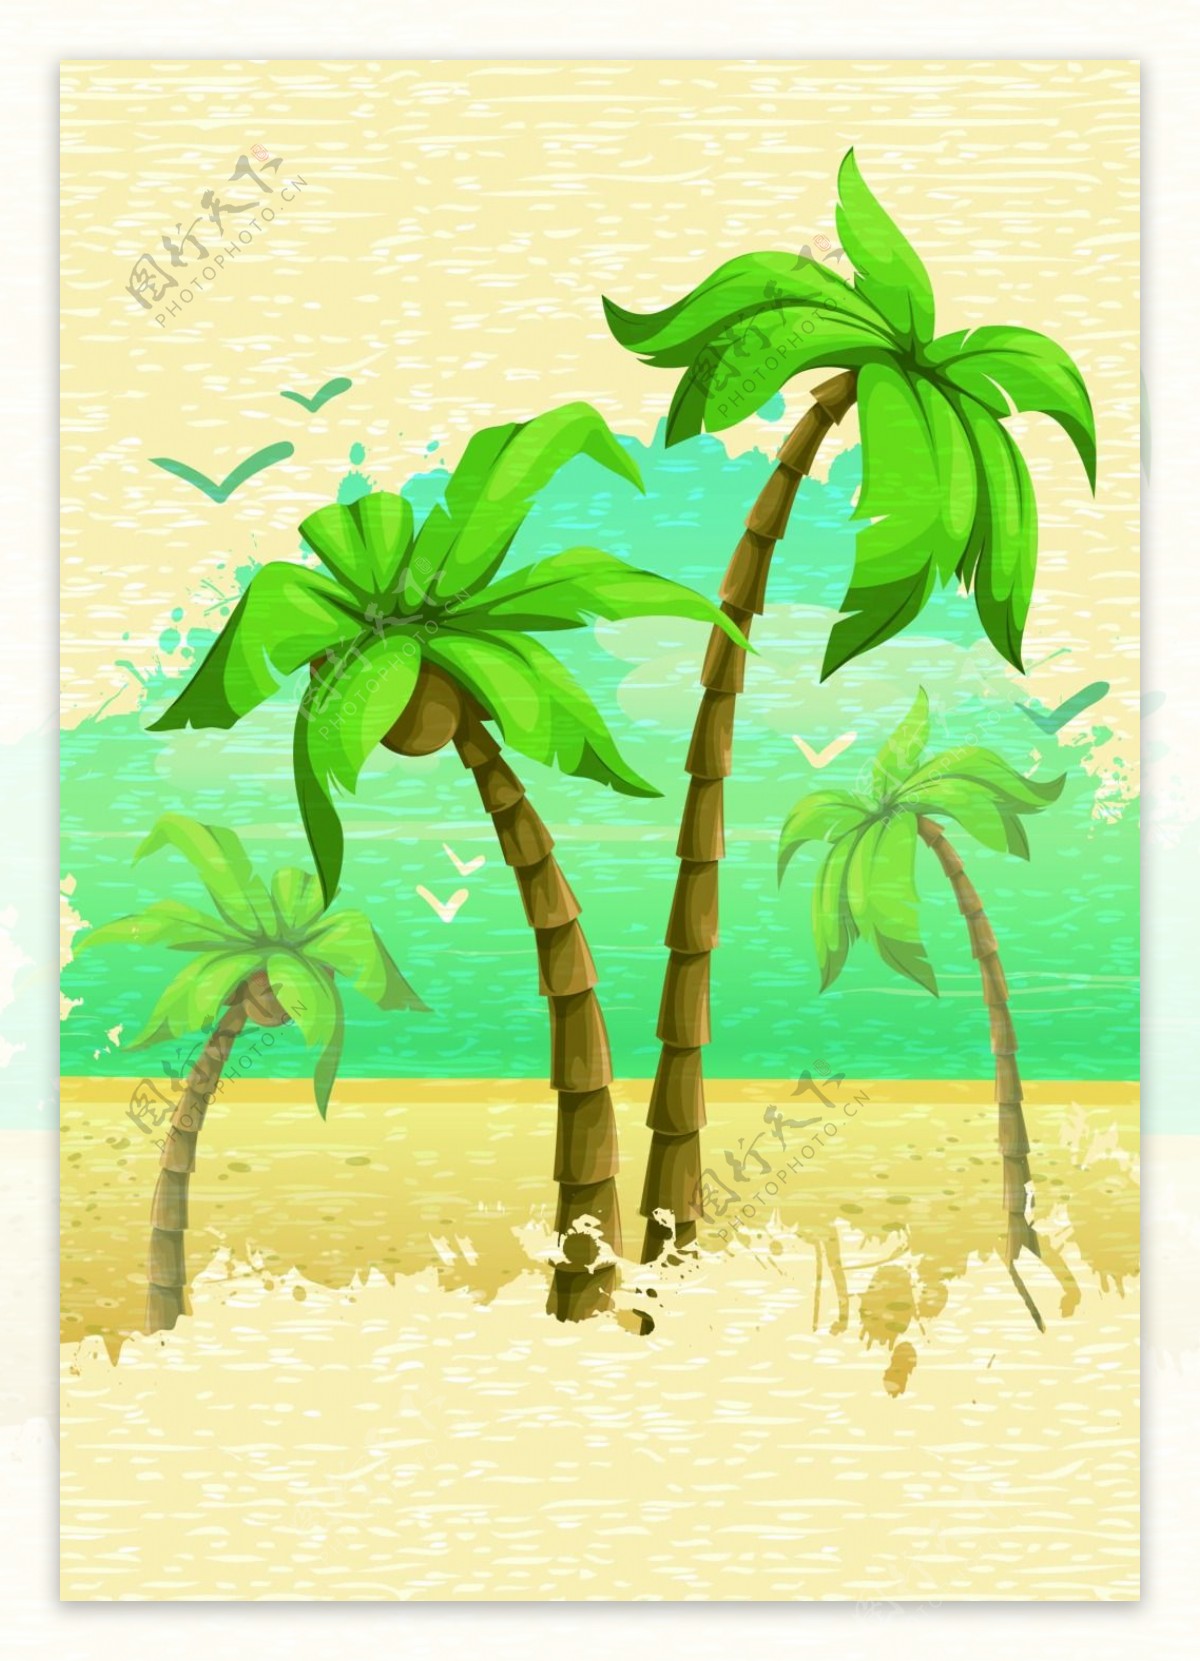 斑驳椰子树背景模版